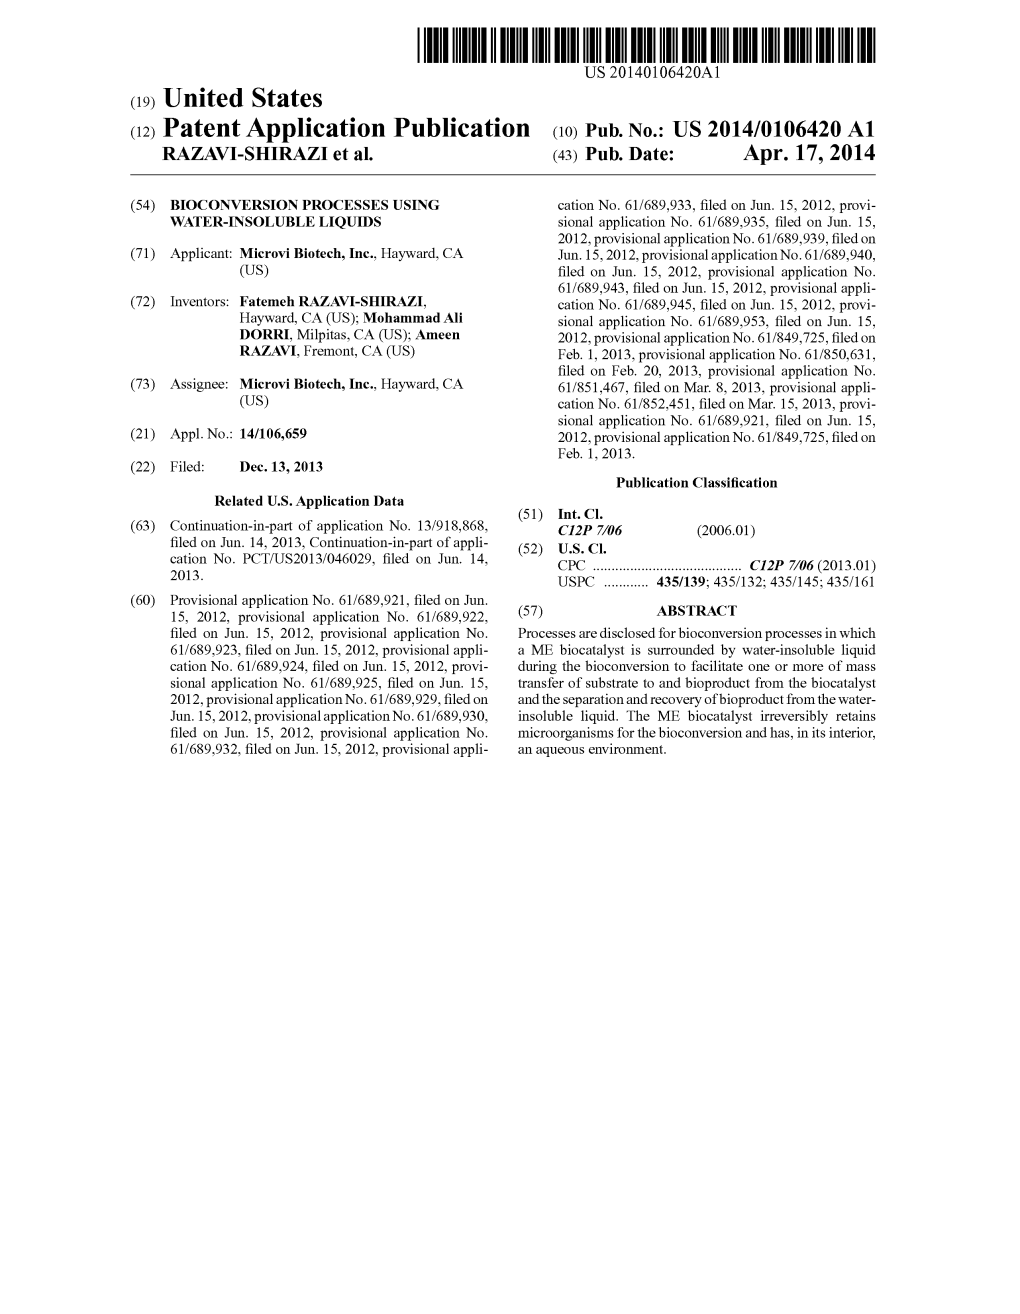 (12) Patent Application Publication (10) Pub. No.: US 2014/0106420 A1 RAZAV-SHRAZI Et Al